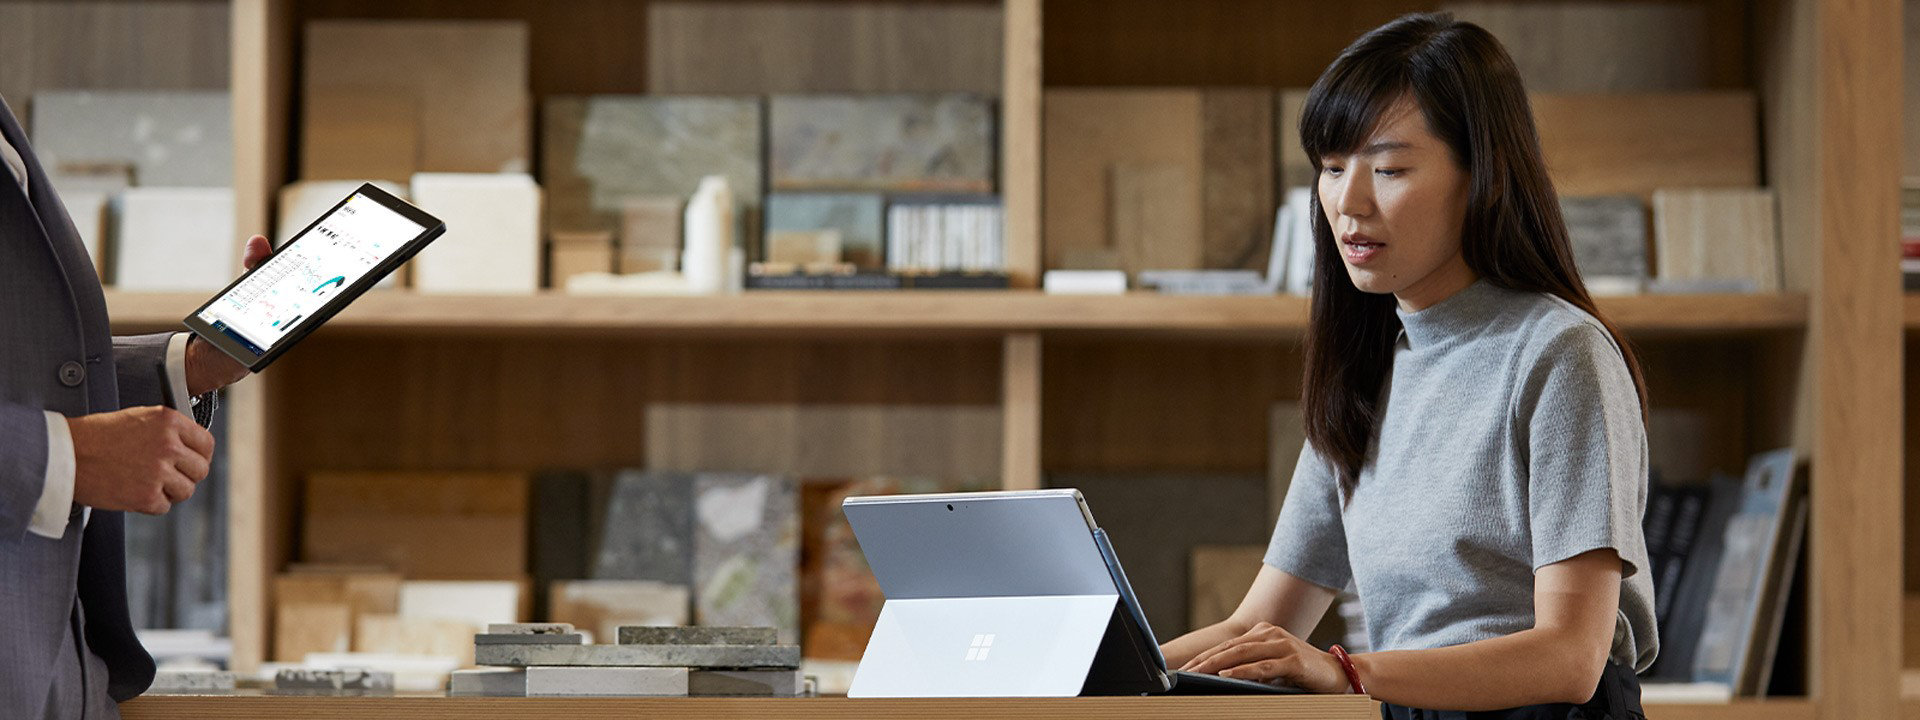 امرأة وزميلها يناقشان الأعمال التجارية أثناء العمل على أجهزة Surface الخاصة بهم